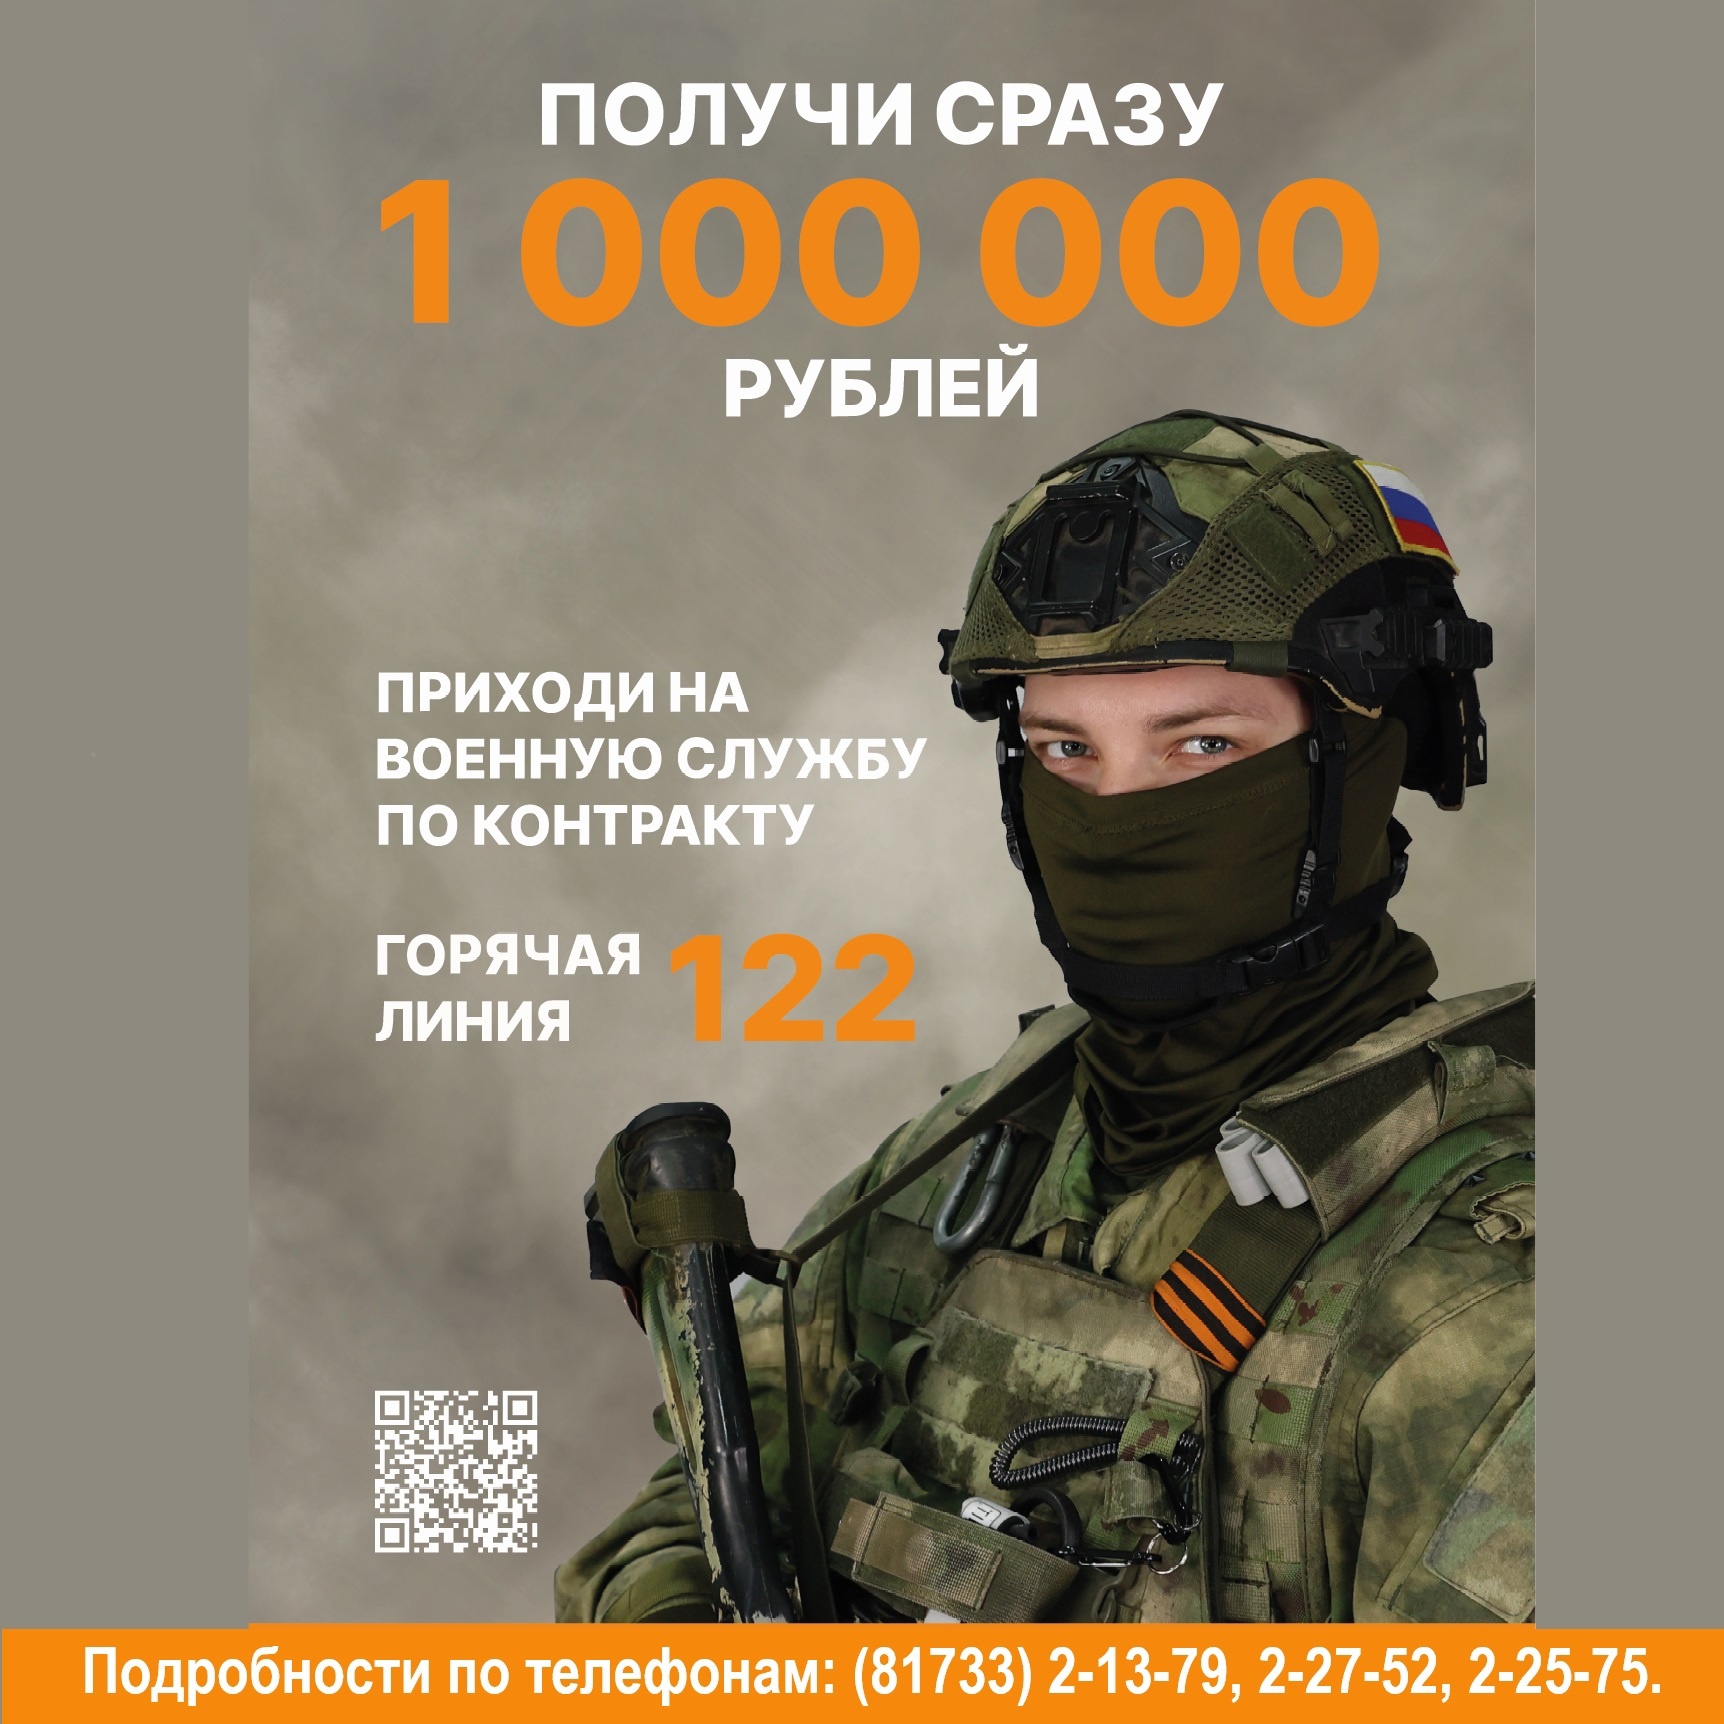 Один миллион рублей за подписание контракта с Министерством обороны!.